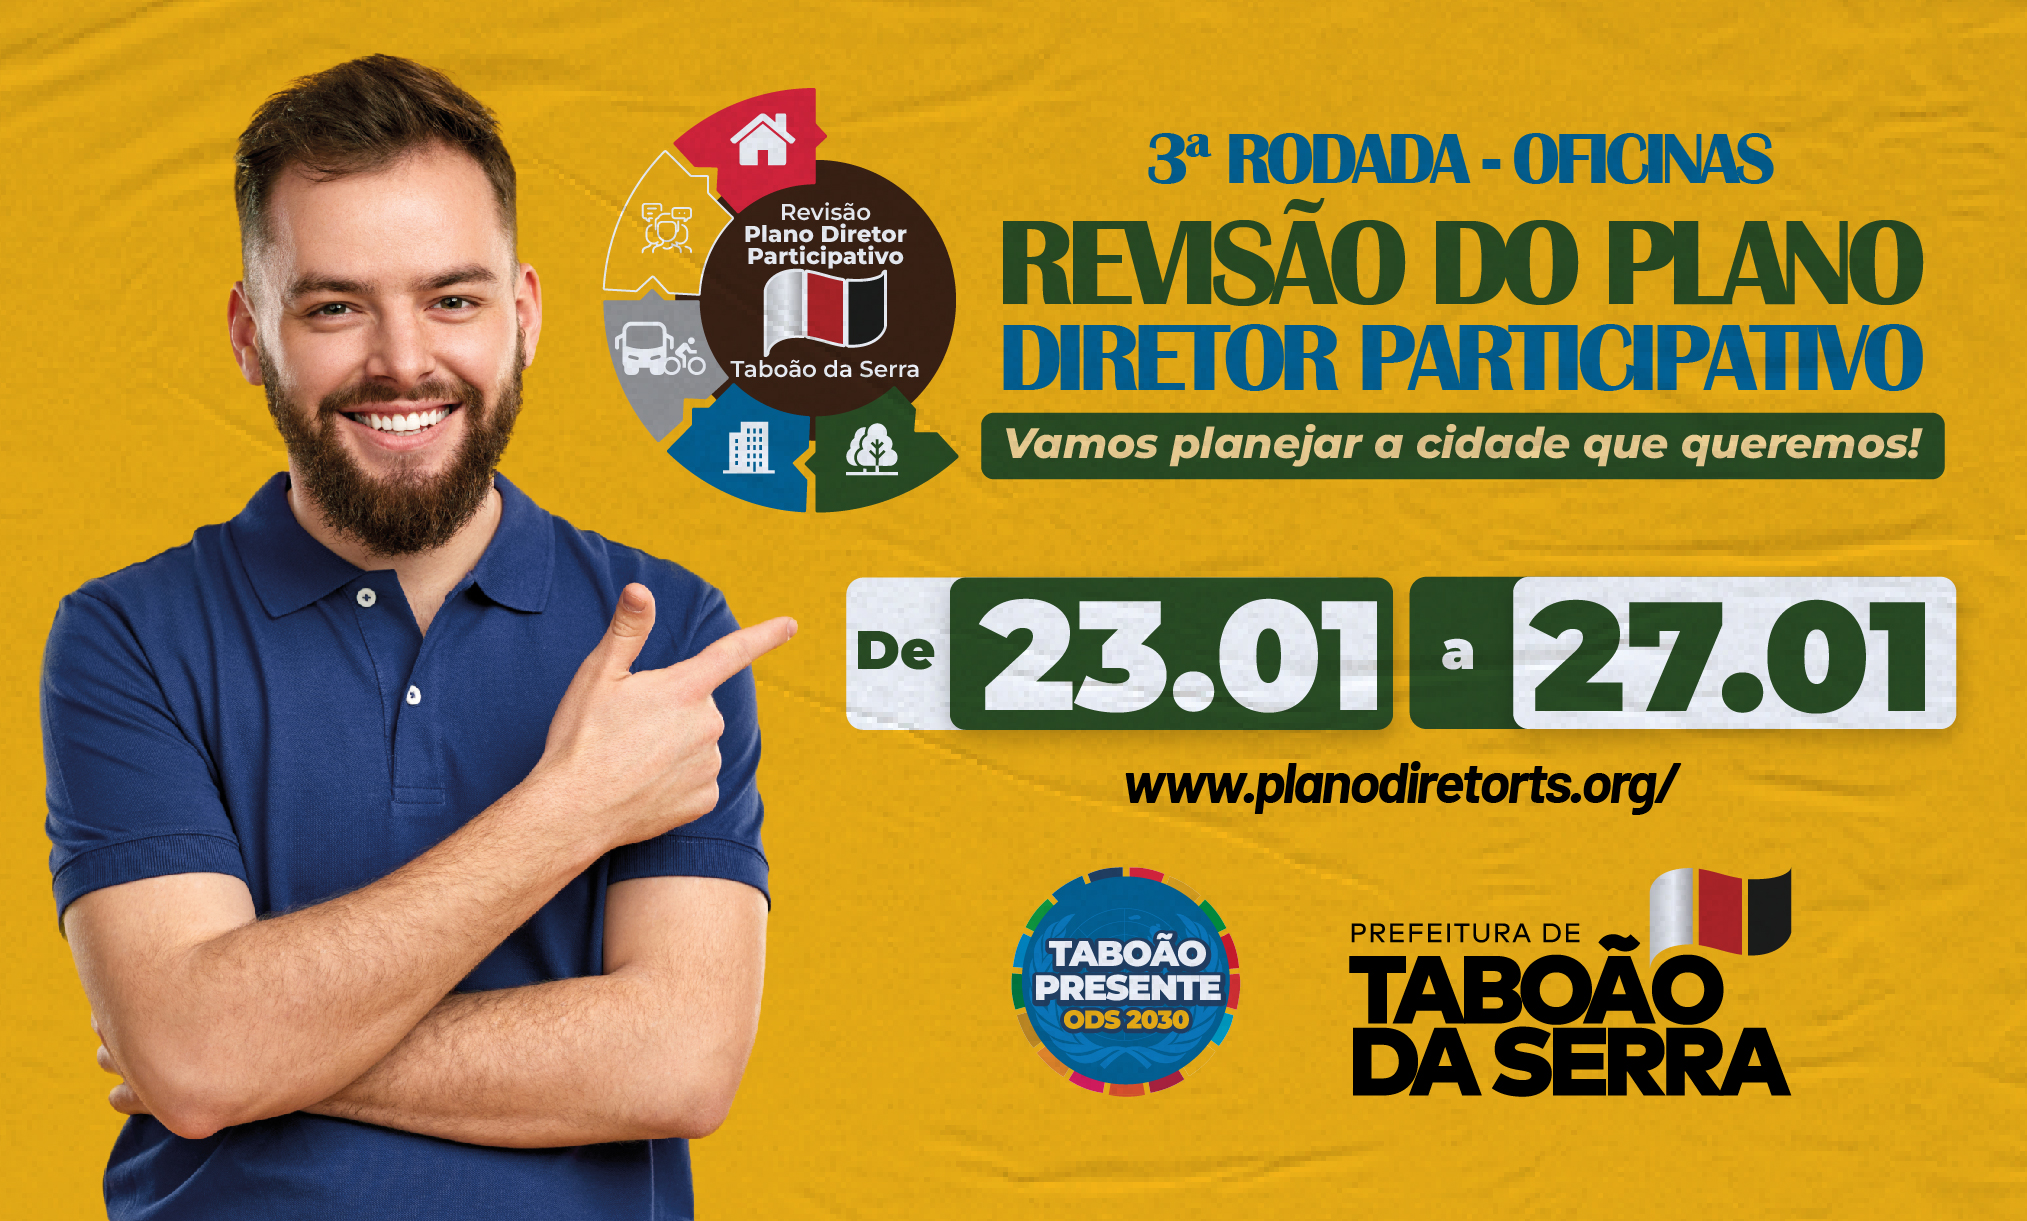 Prefeitura de Taboão da Serra promove 3ª rodada de oficinas de revisão do Plano Diretor_arte